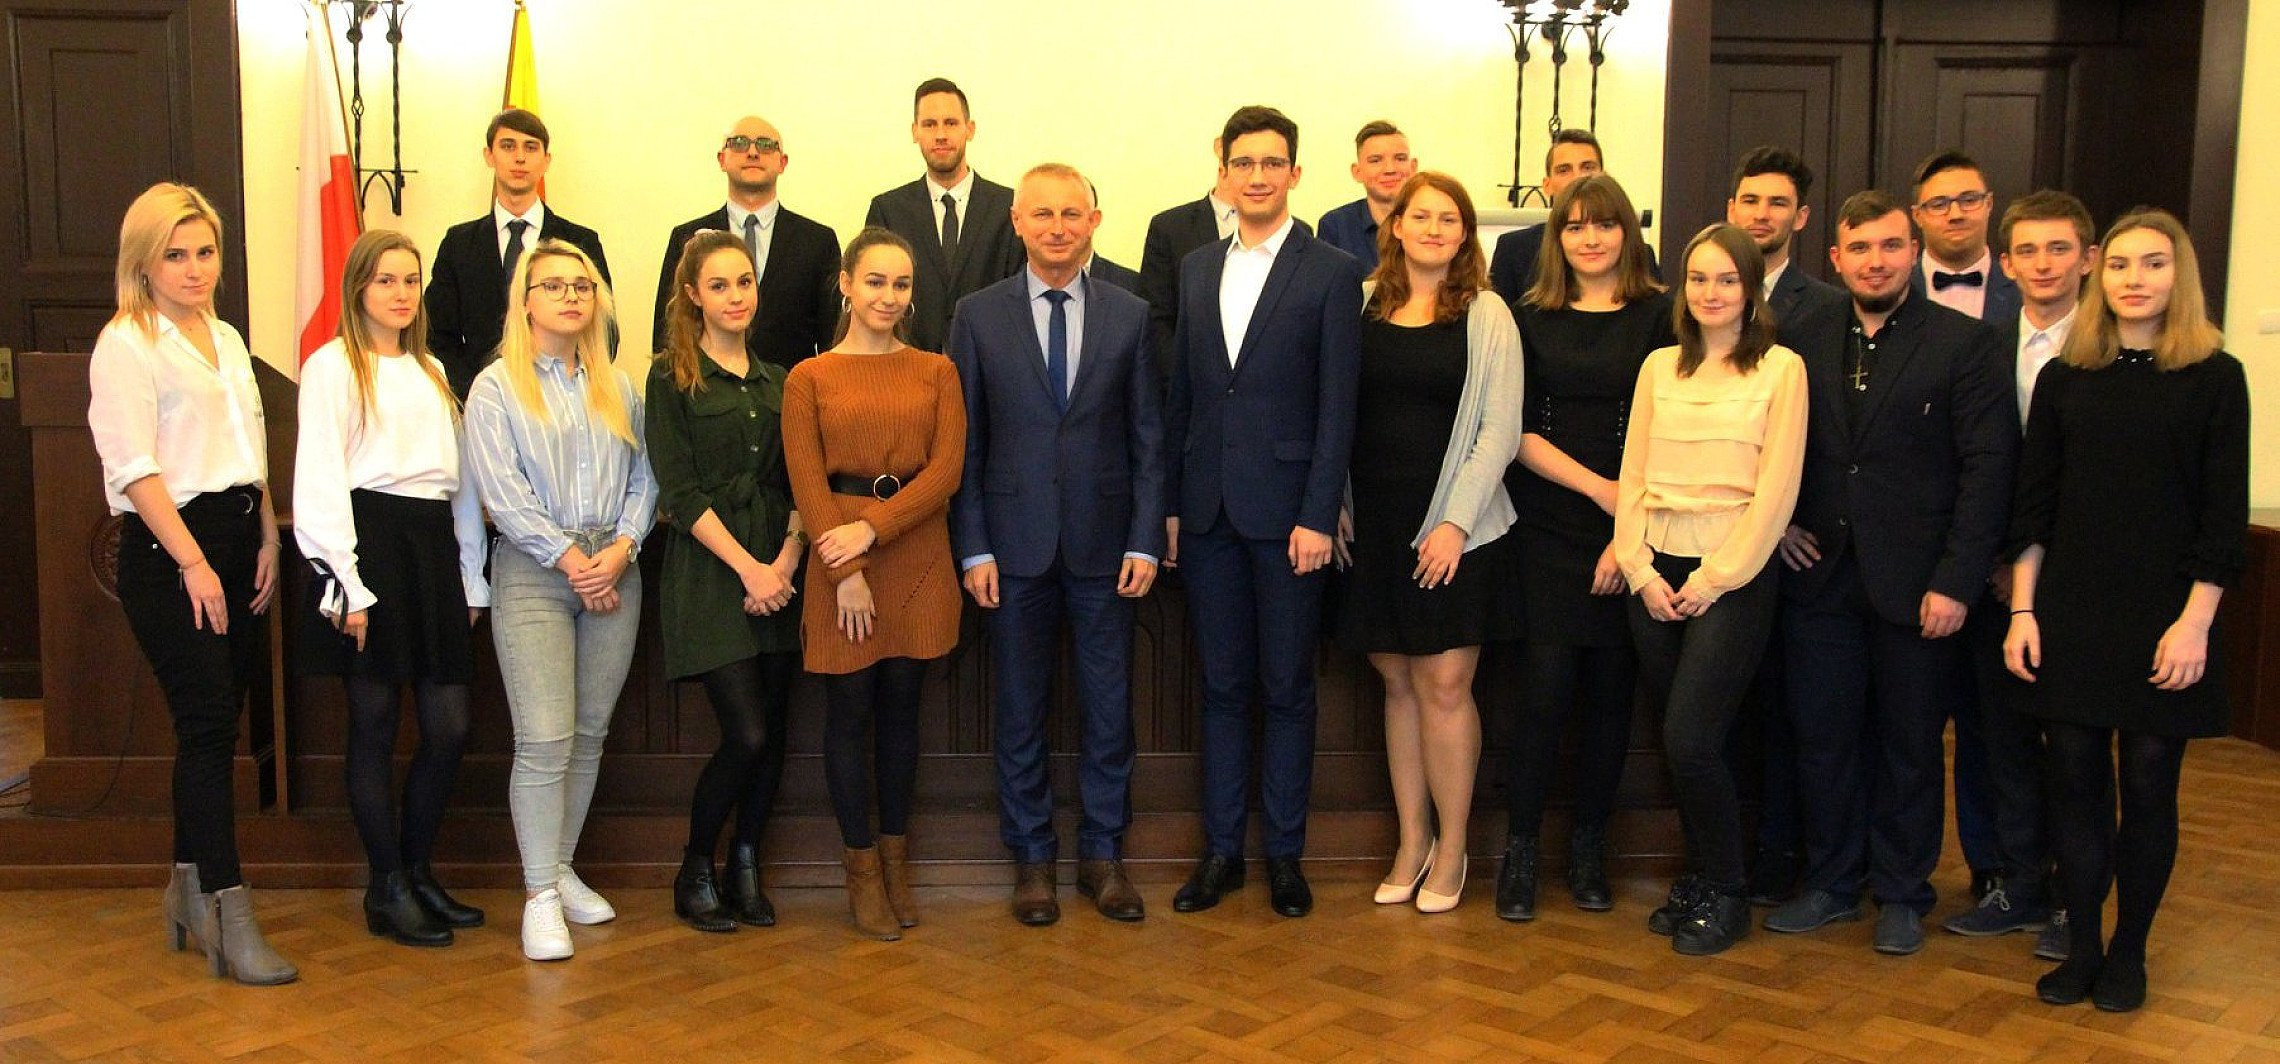 Inowrocław - Młodzi radni skończyli kadencję